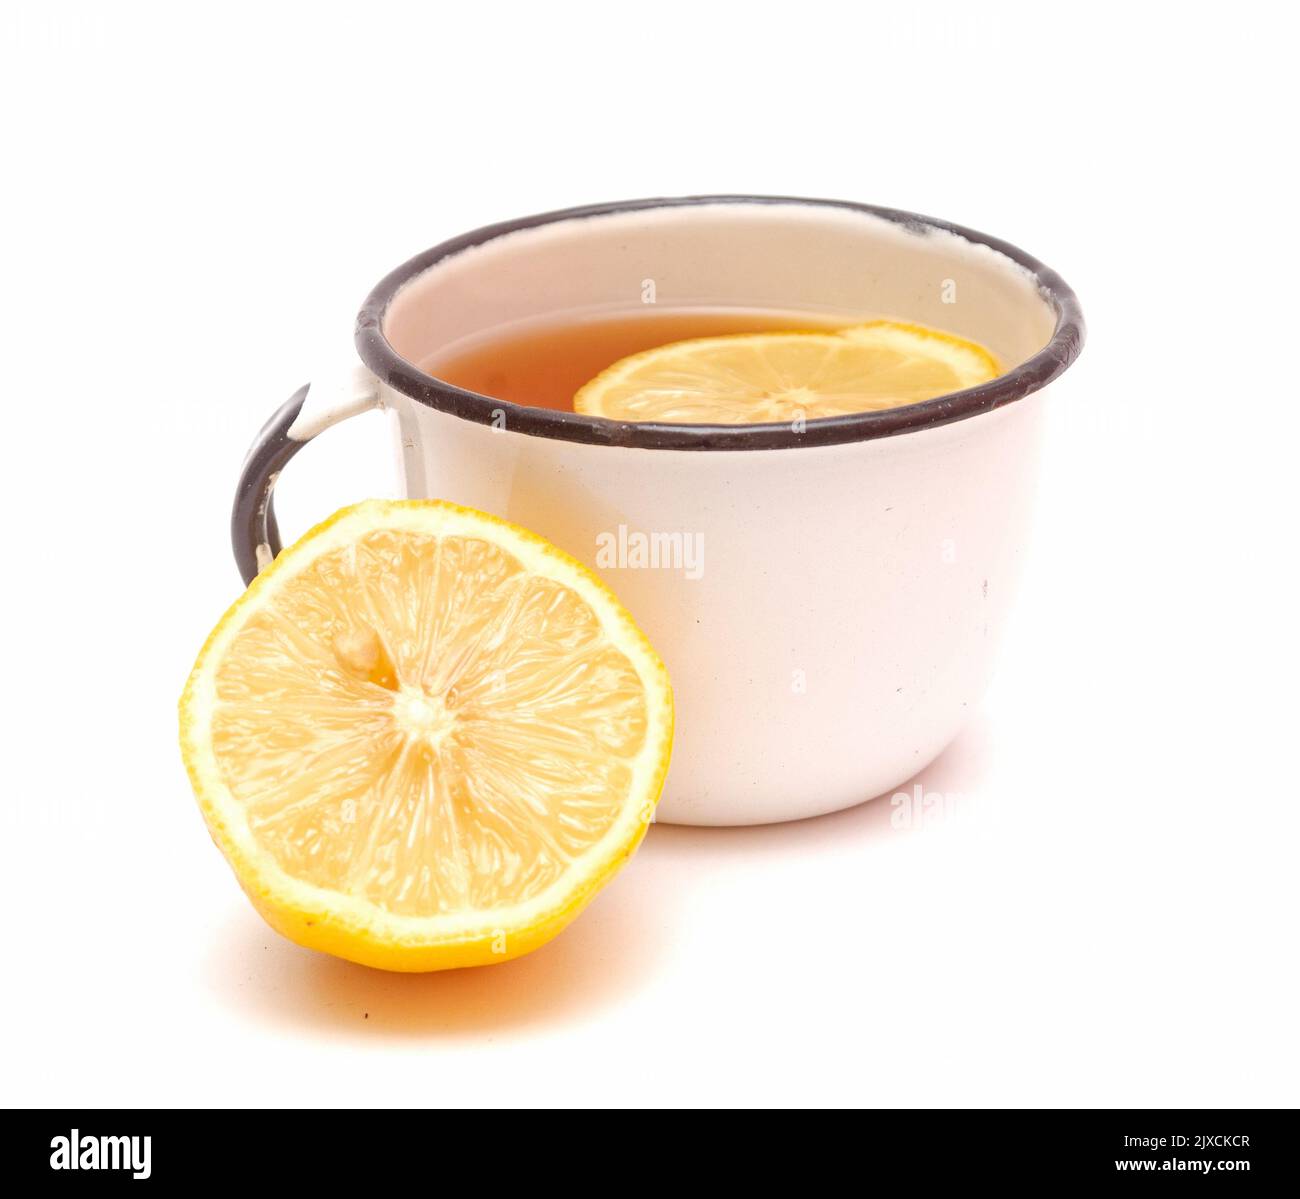 Vecchia tazza retrò in metallo con tè al limone e mezzo di limone isolato su sfondo bianco. Bevanda utile da autunno freddo Foto Stock